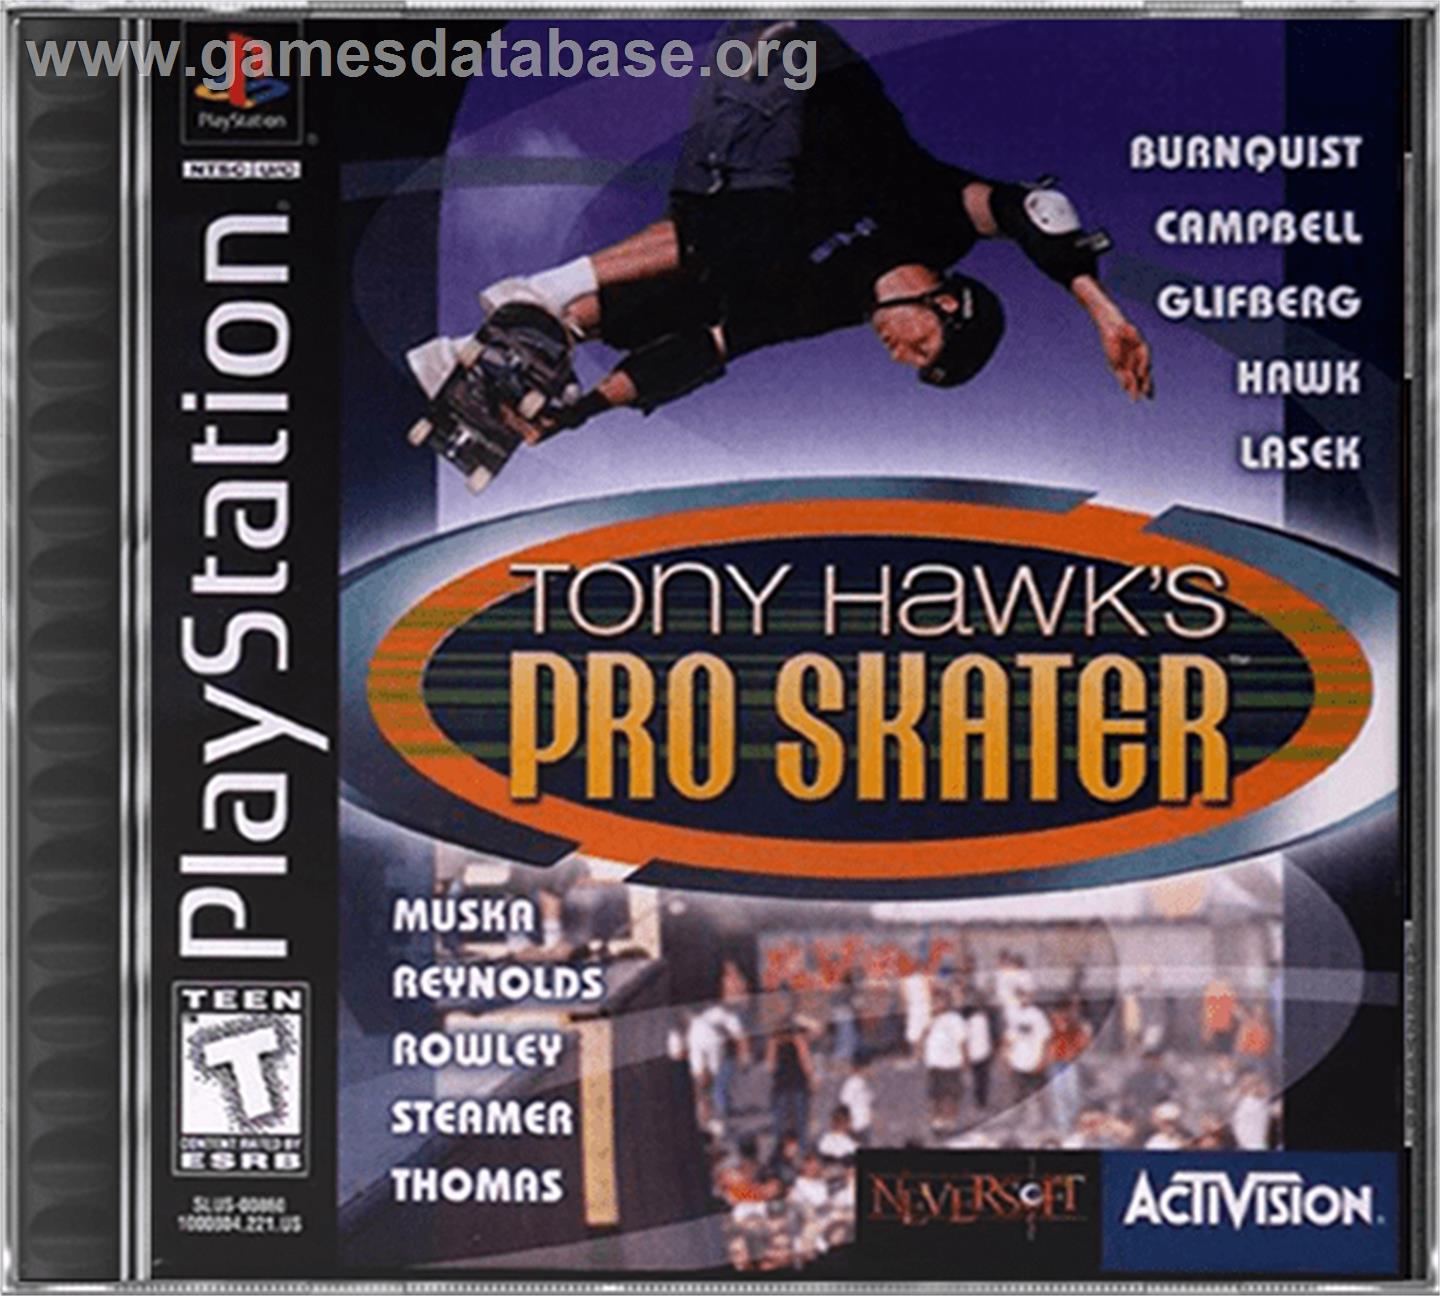 Tony Hawk's Pro Skater - Sony Playstation - Artwork - Box